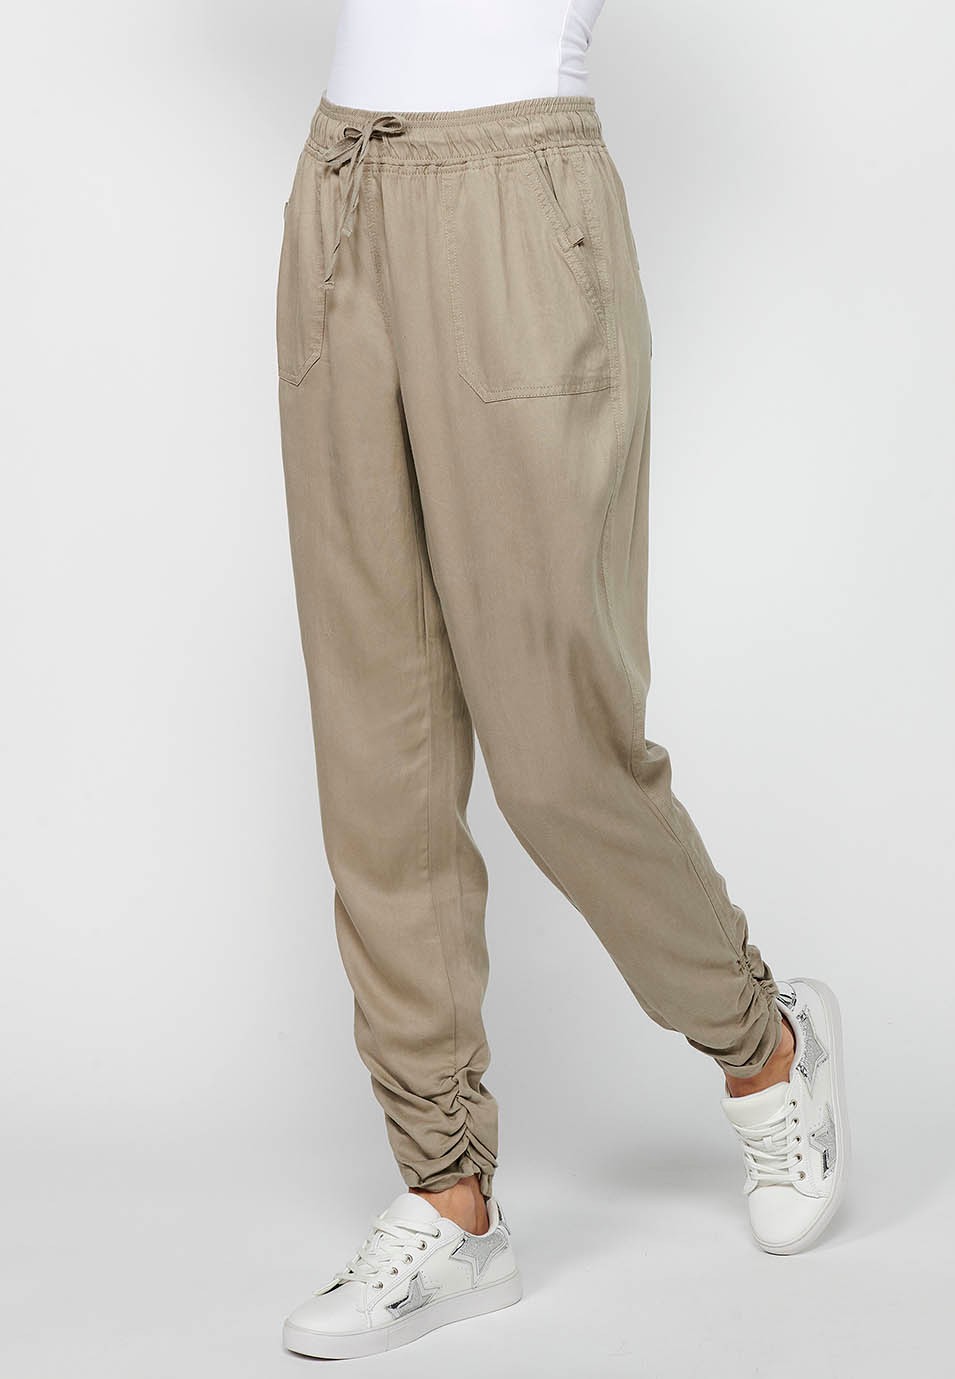 Pantalón largo jogger con Acabado rizado y Cintura engomada con Cuatro bolsillos, dos traseros con solapa de Color Gris para Mujer 1